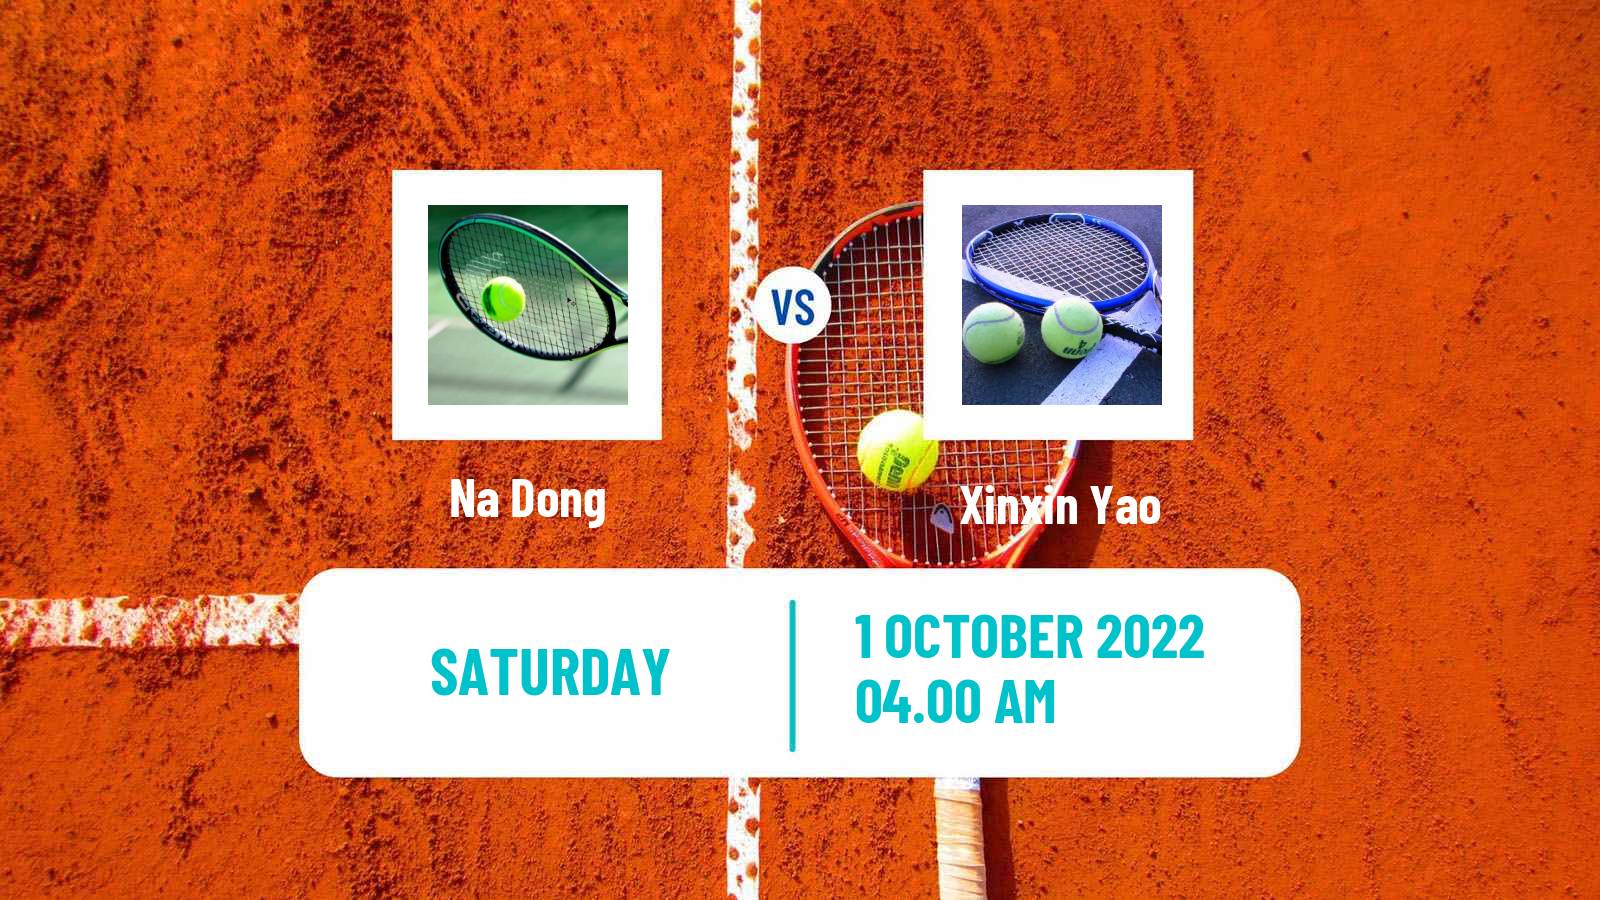 Tennis ITF Tournaments Na Dong - Xinxin Yao